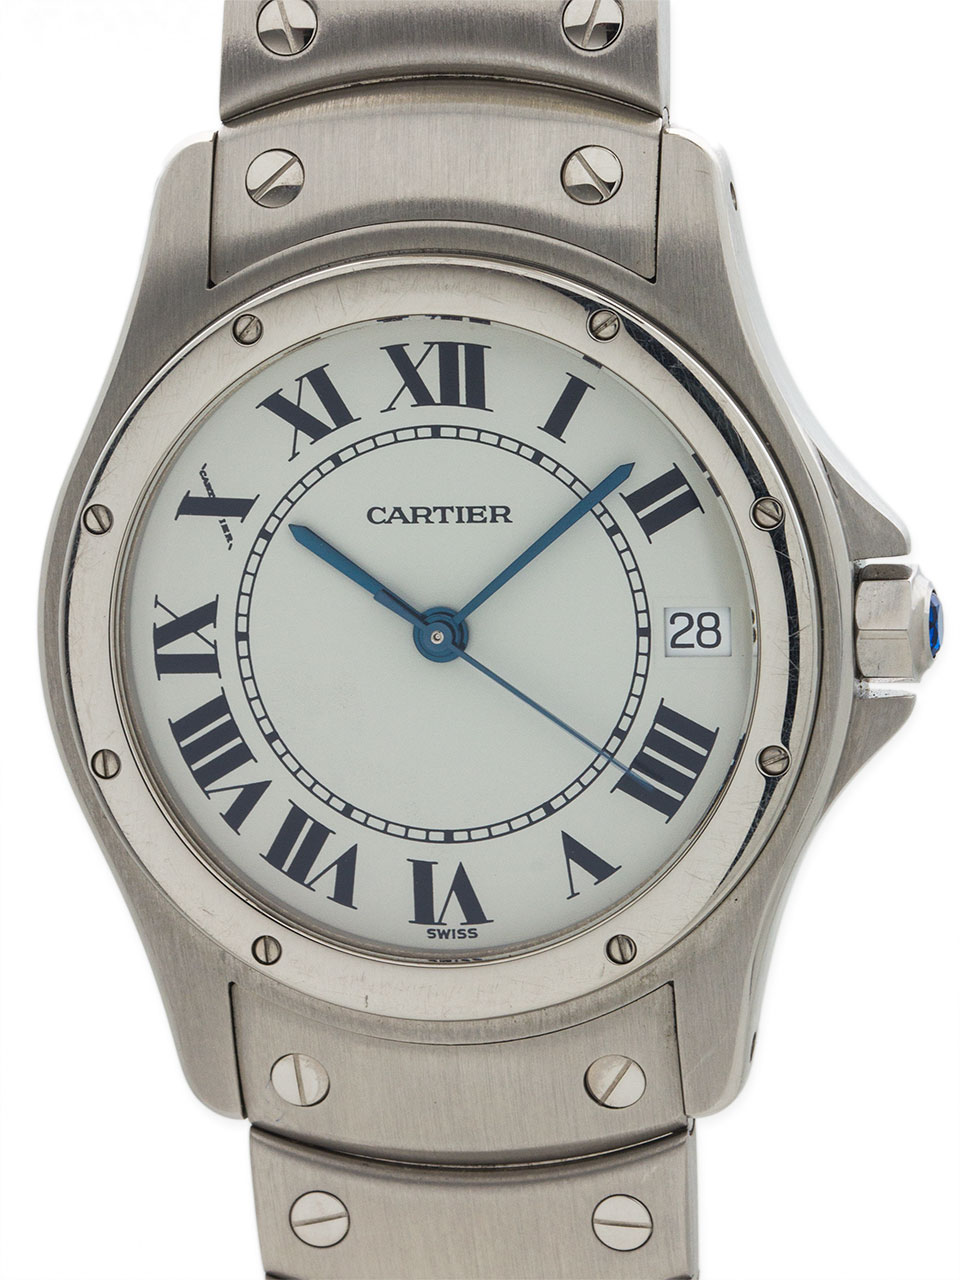 Cartier Santos Ronde Man’s circa 2000